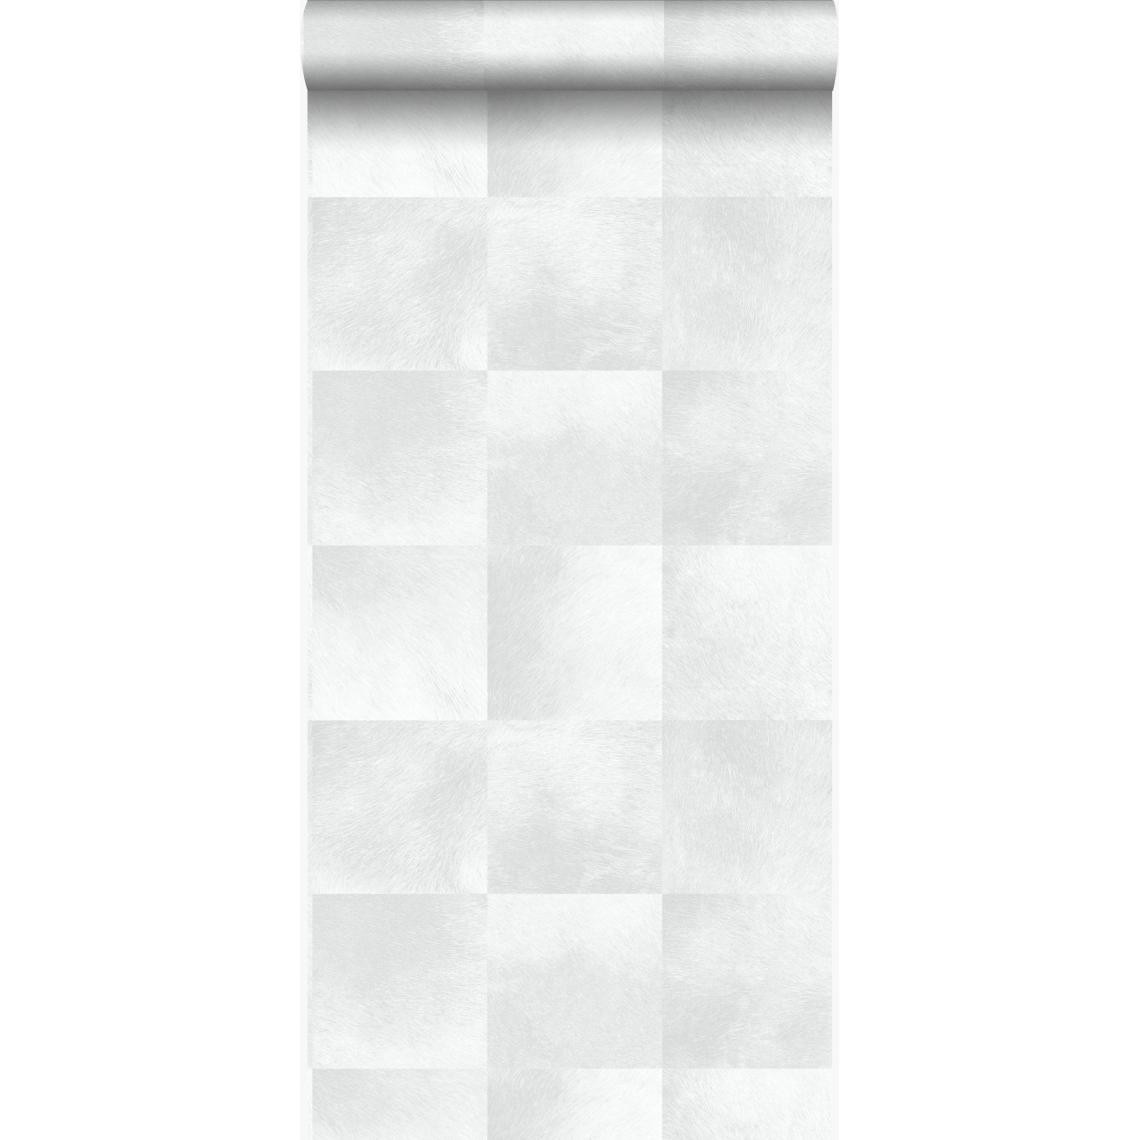 Origin - Origin papier peint peau d'animal avec texture de fourrure gris chaud clair - 347485 - 53 cm x 10,05 m - Papier peint